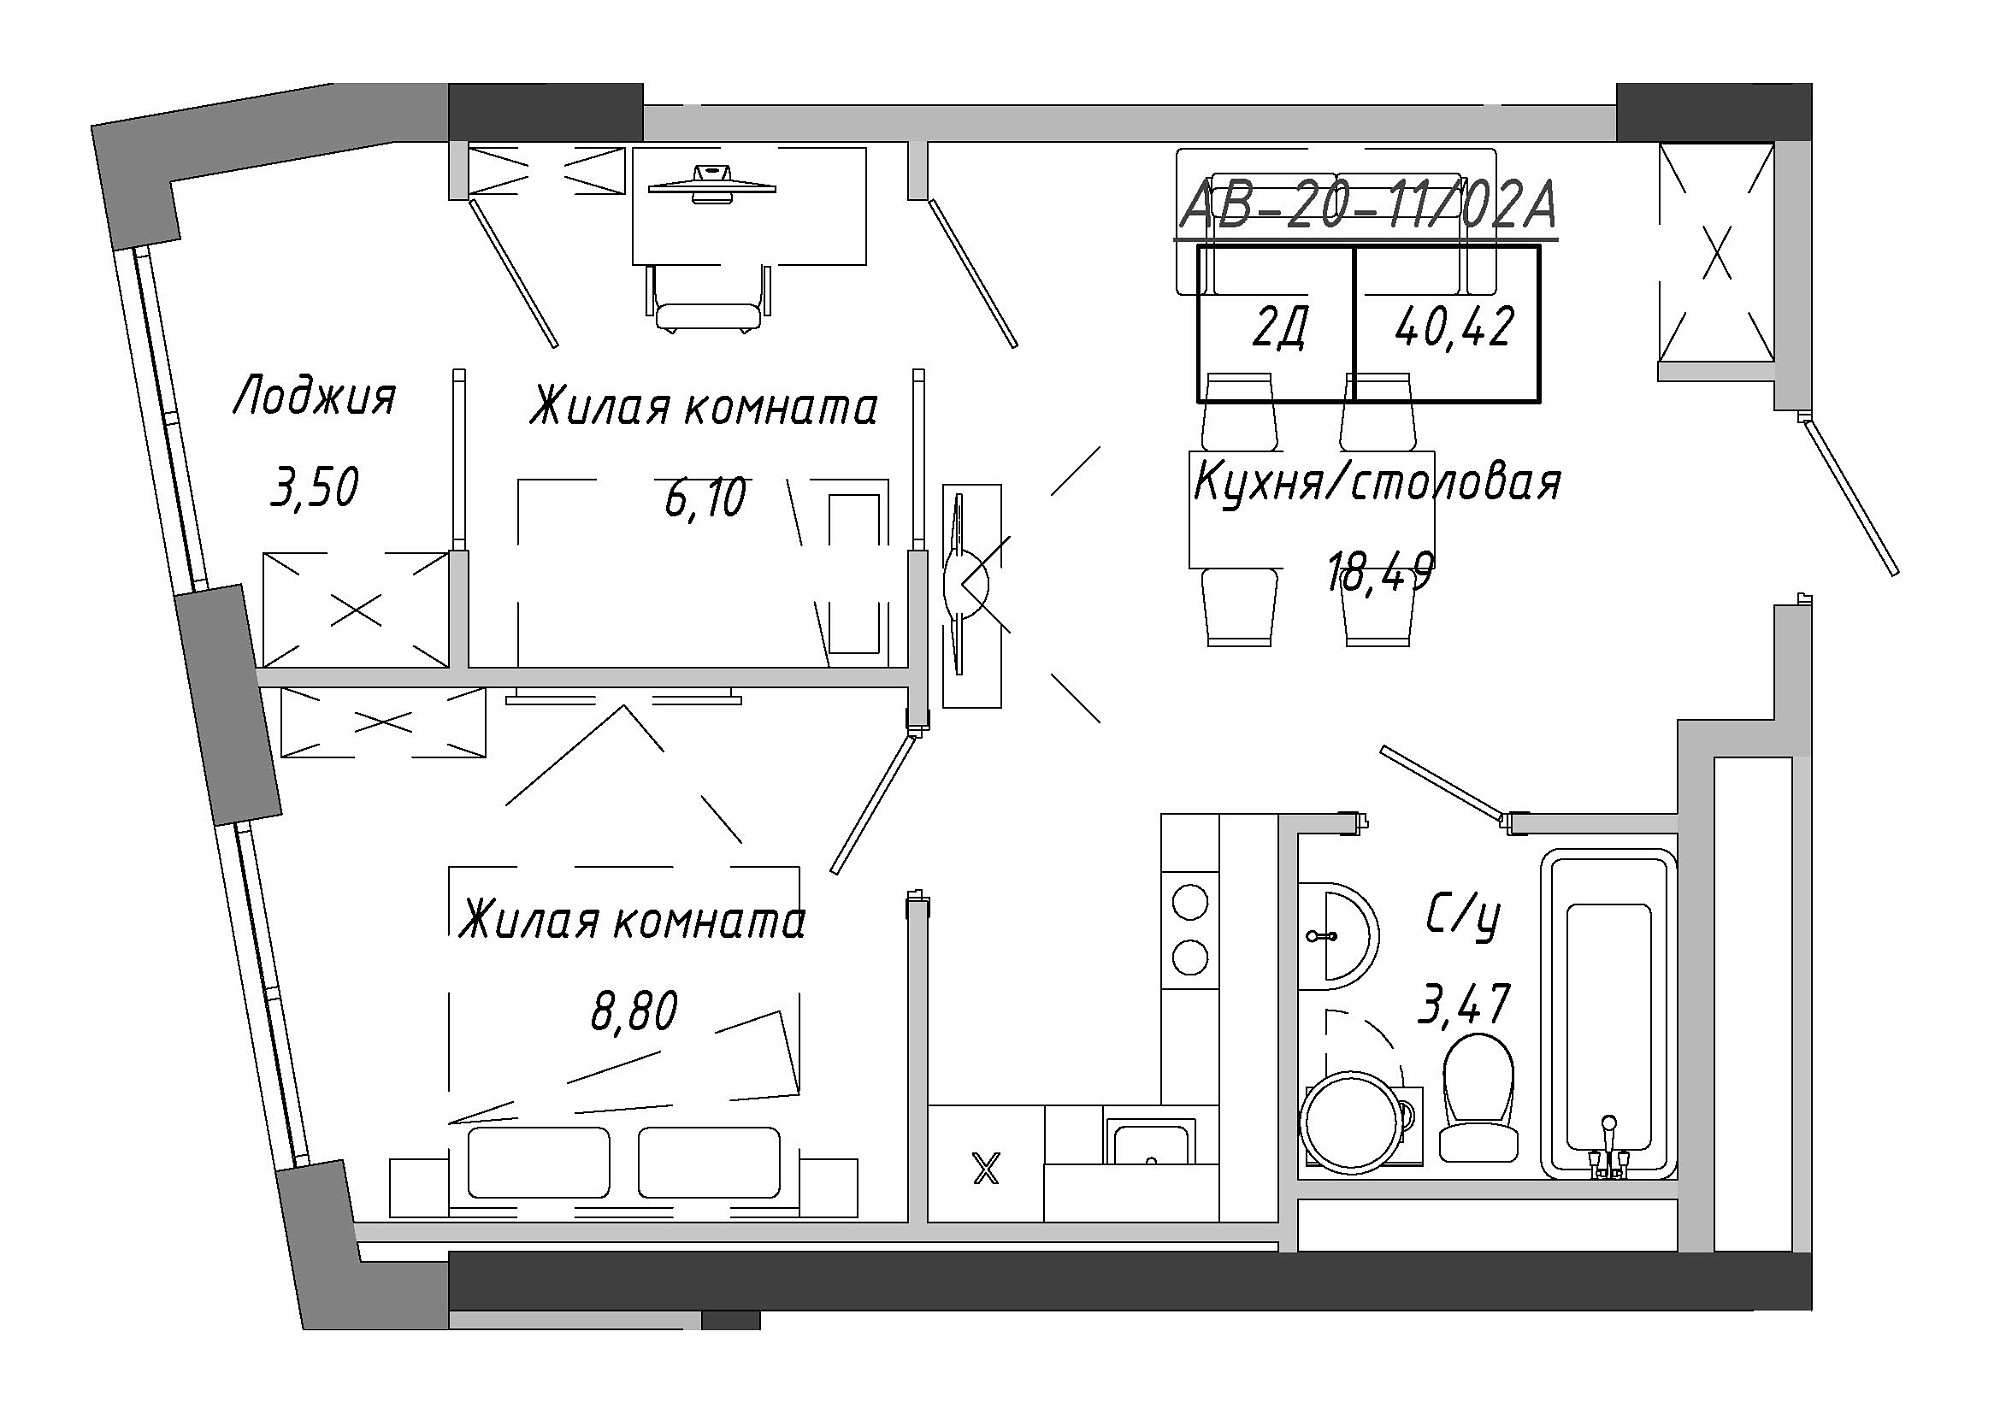 Планування 2-к квартира площею 41.9м2, AB-20-11/0002а.